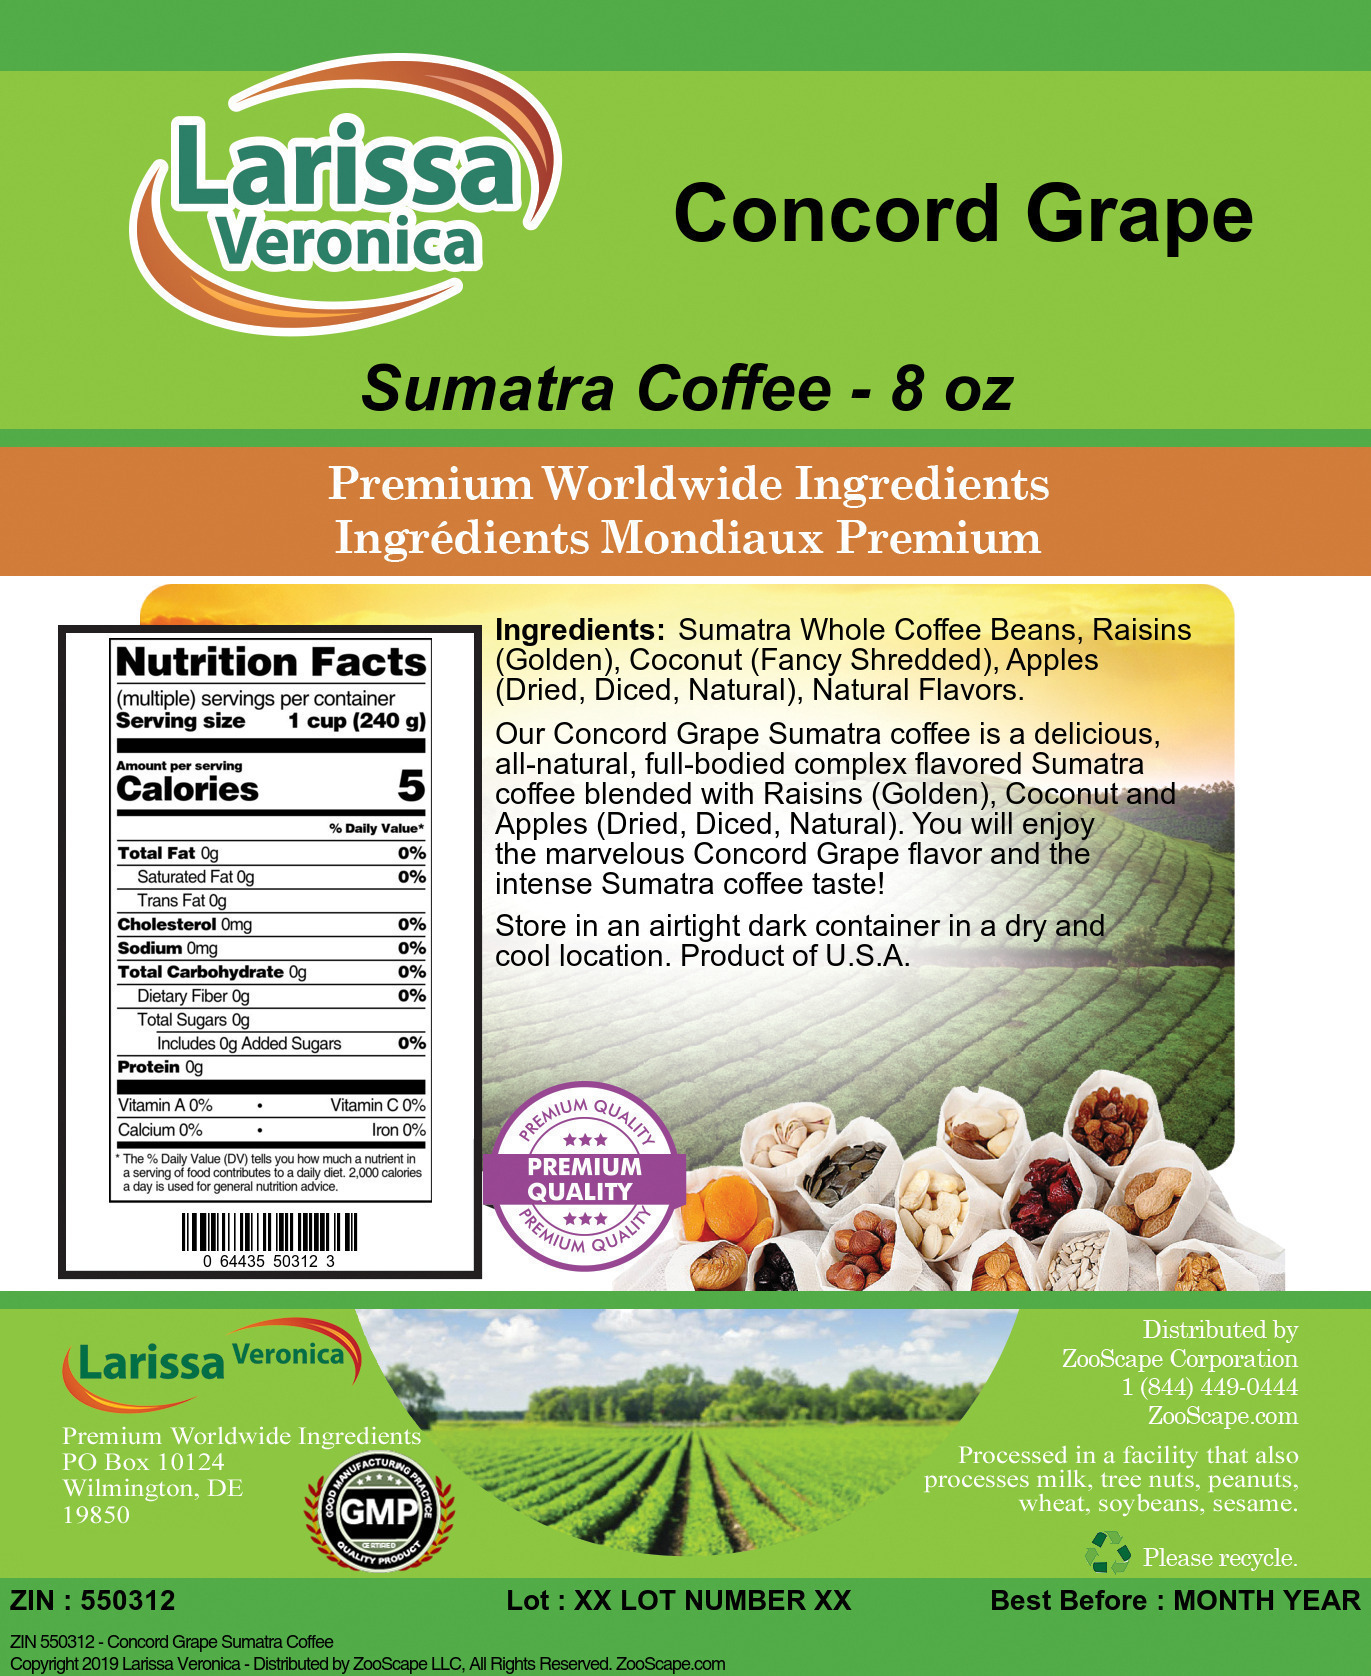 Concord Grape Sumatra Coffee - Label